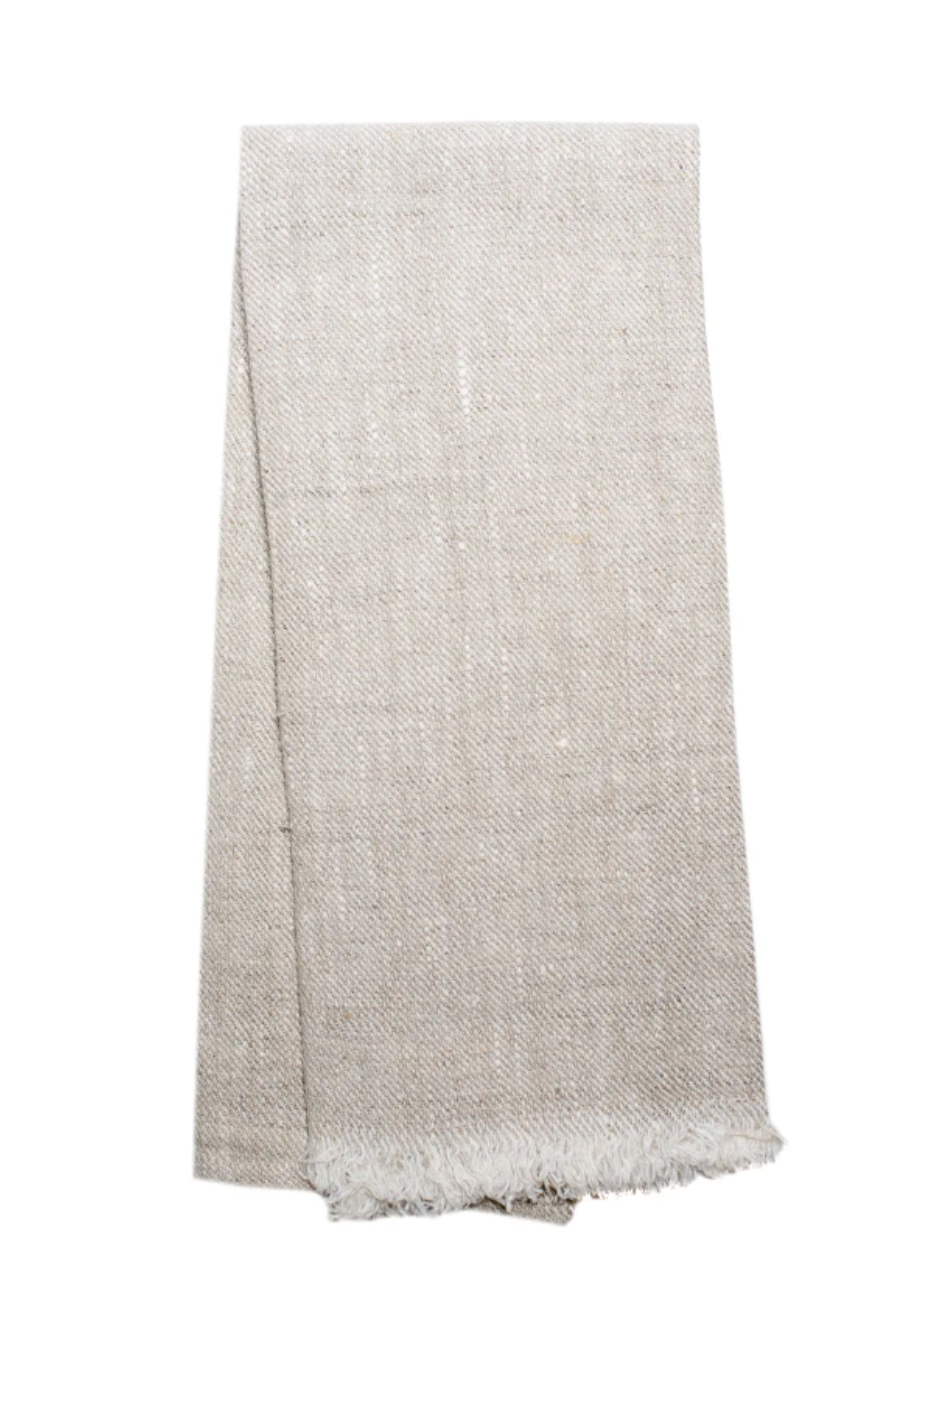 Beige fringe linen tea towel. 100% Linen